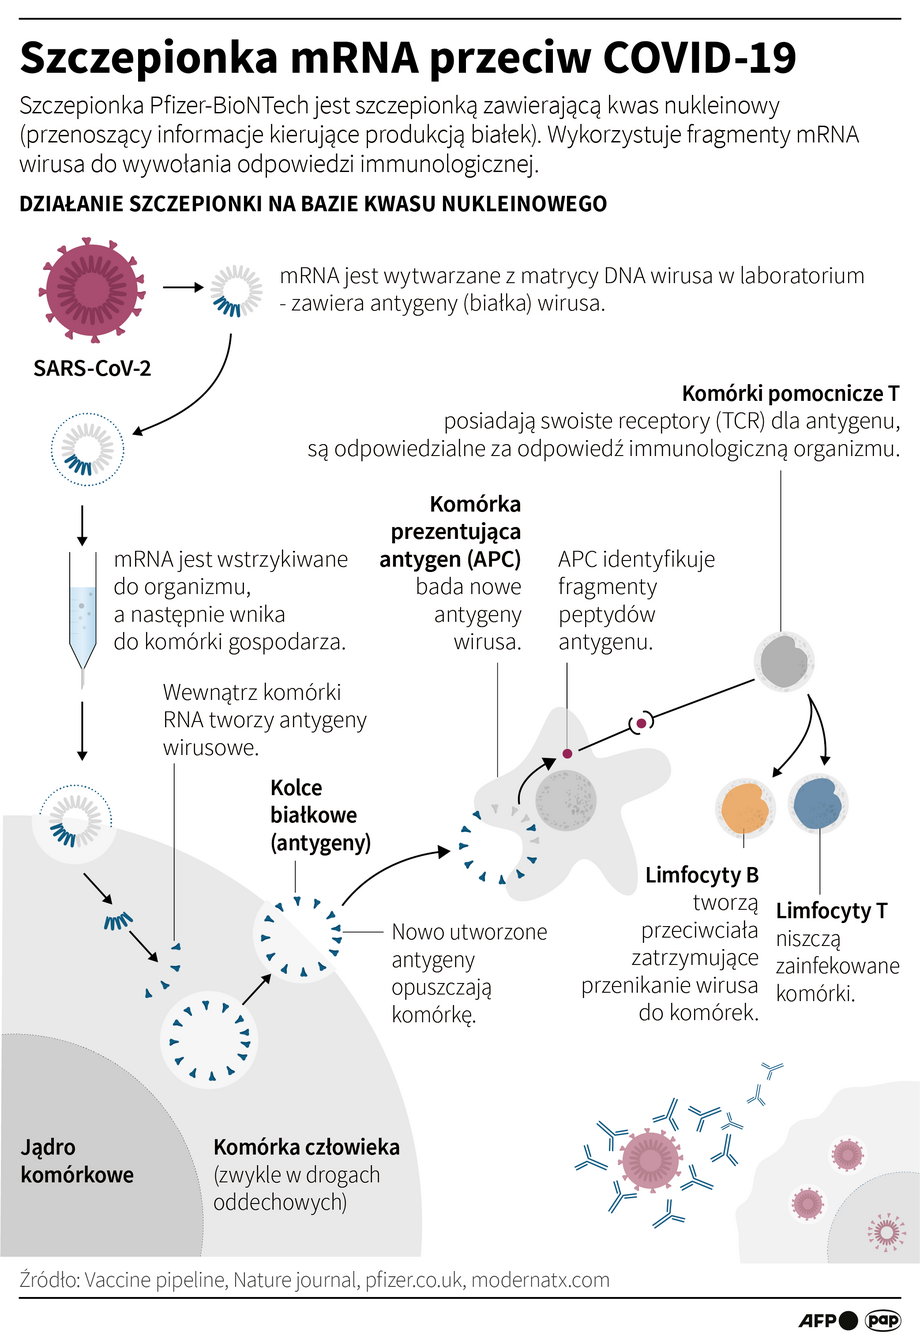 Mechanizm działania szczepionki bazującej na mRNA